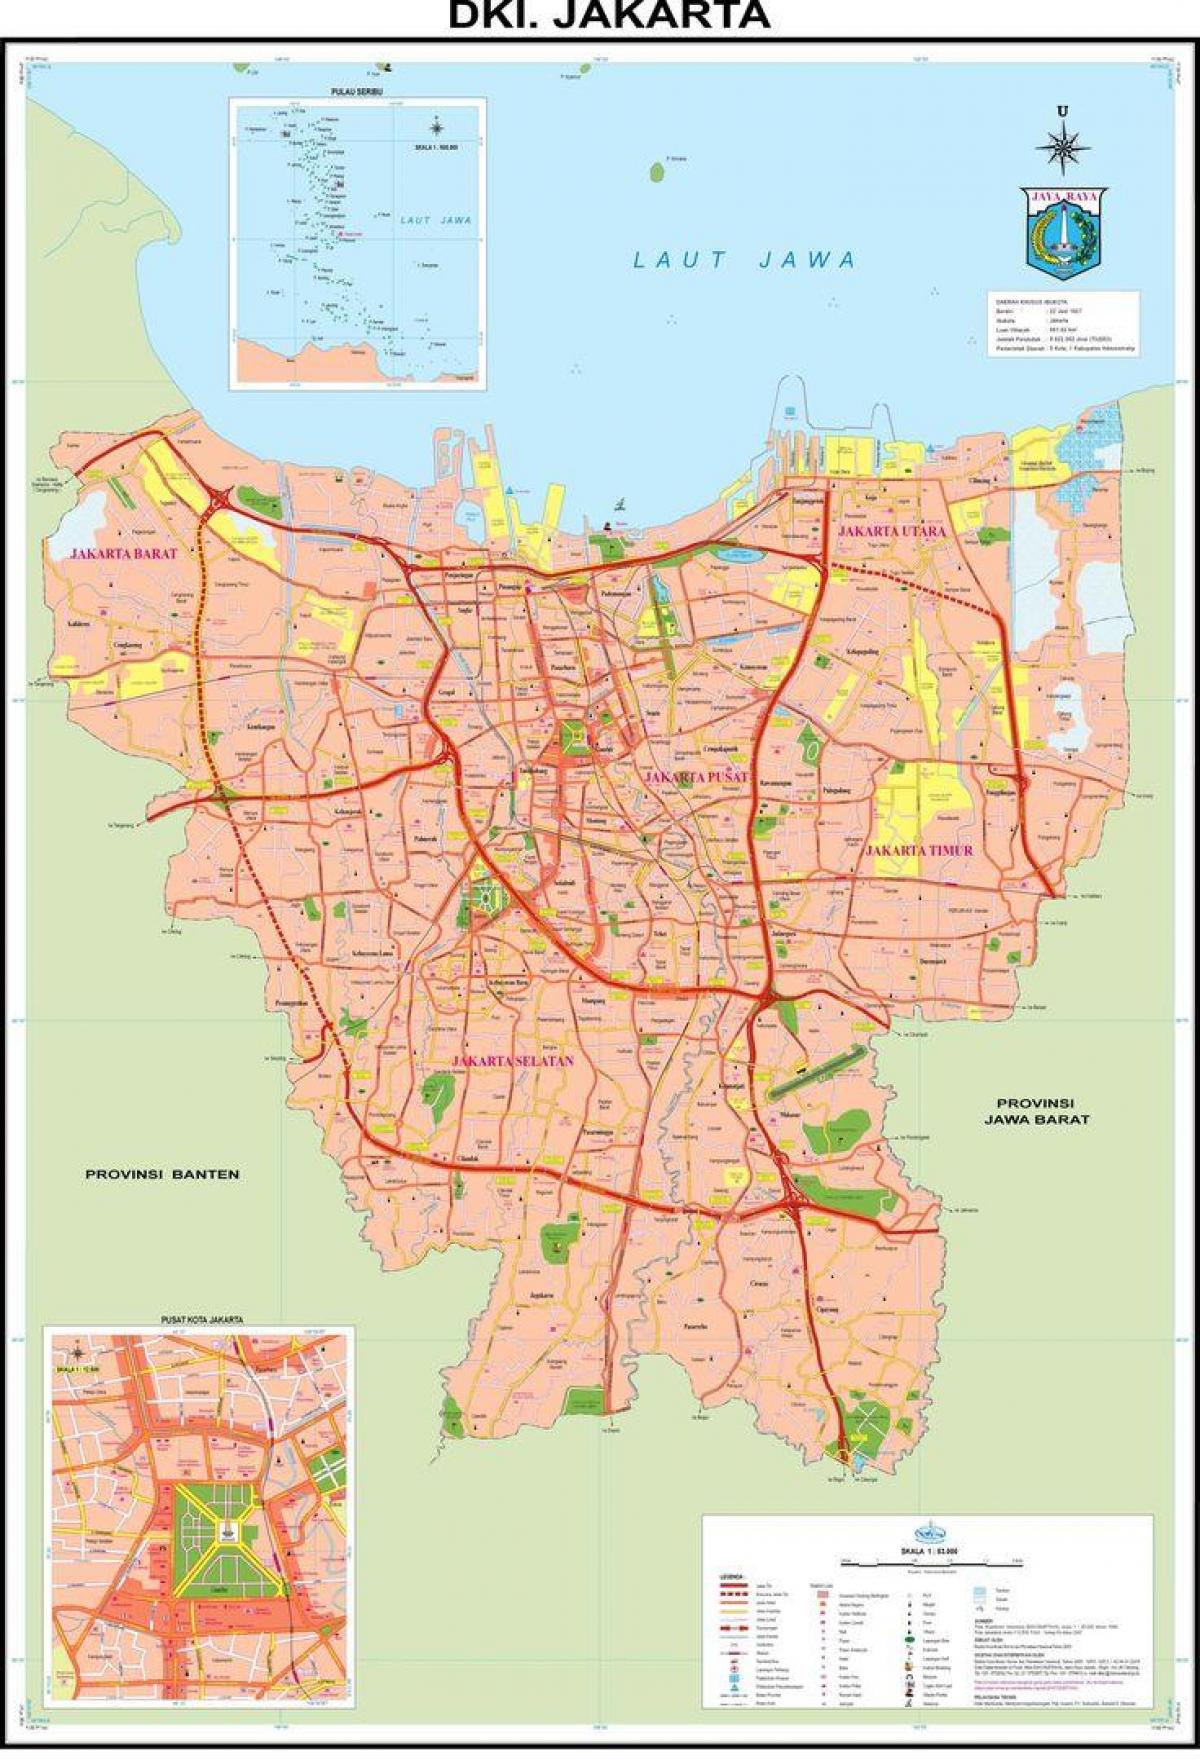 kort af Jakarta gamla bænum